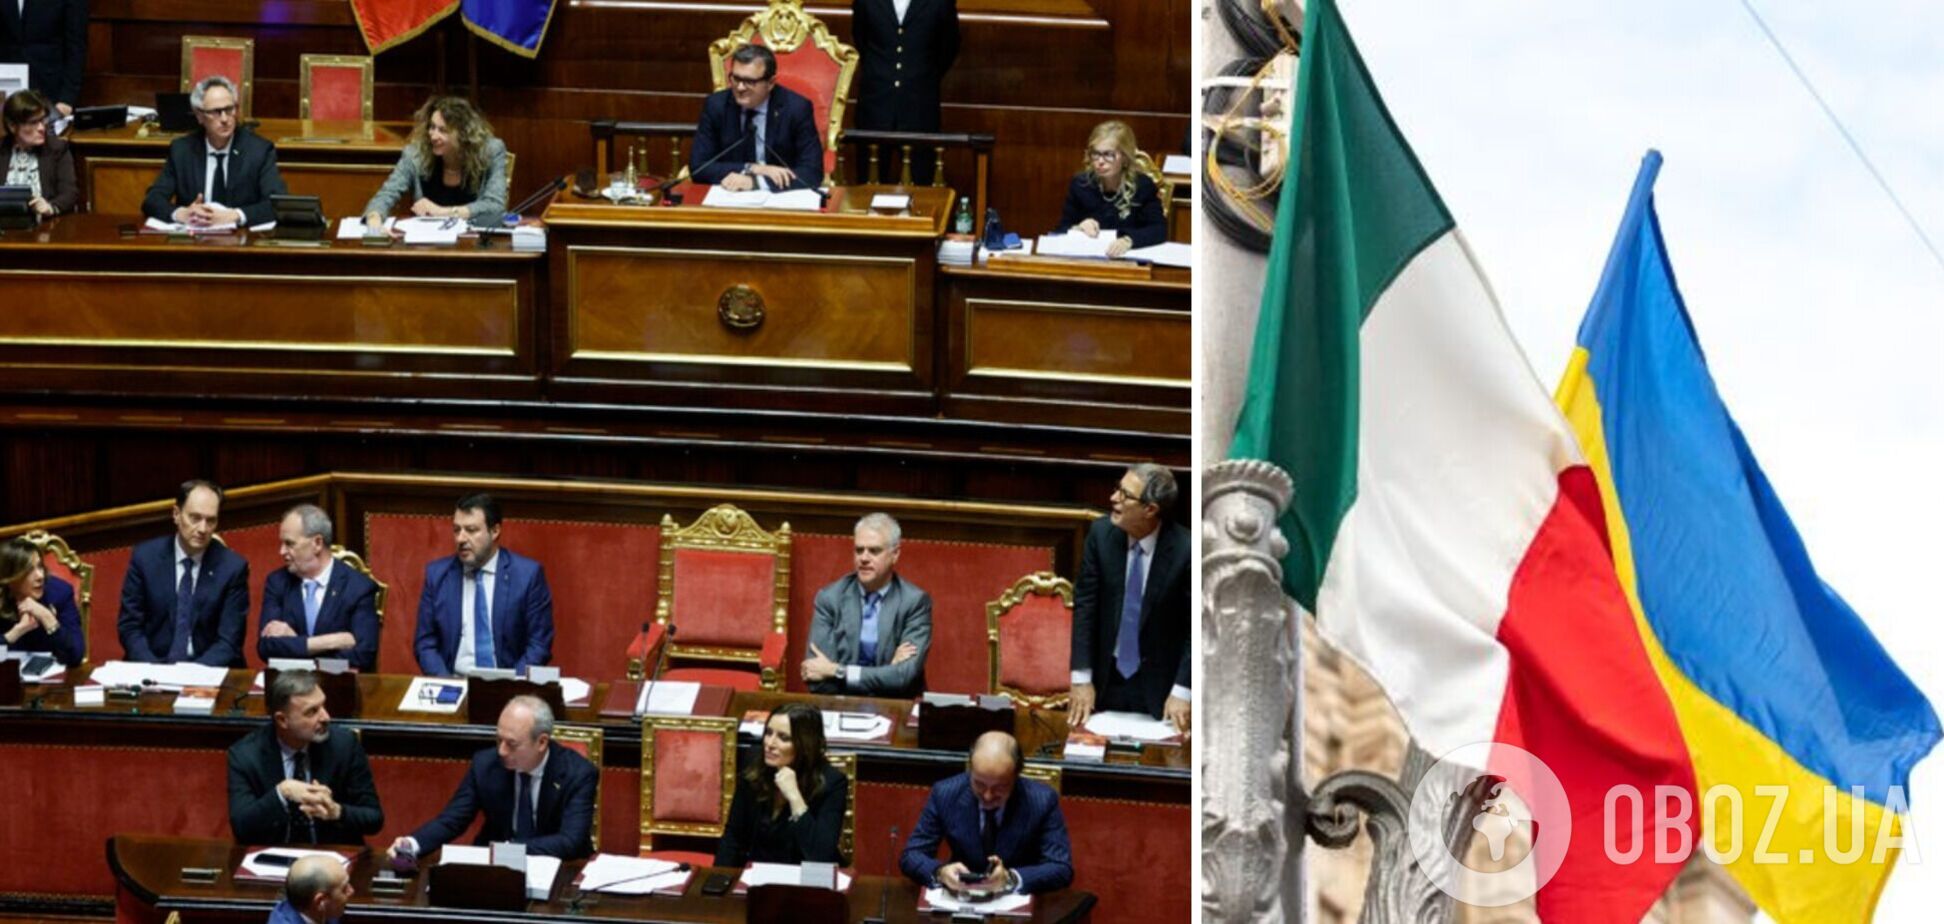 Сенат Италии дал зеленый свет на поставку оружия Украине до конца года: что это значит